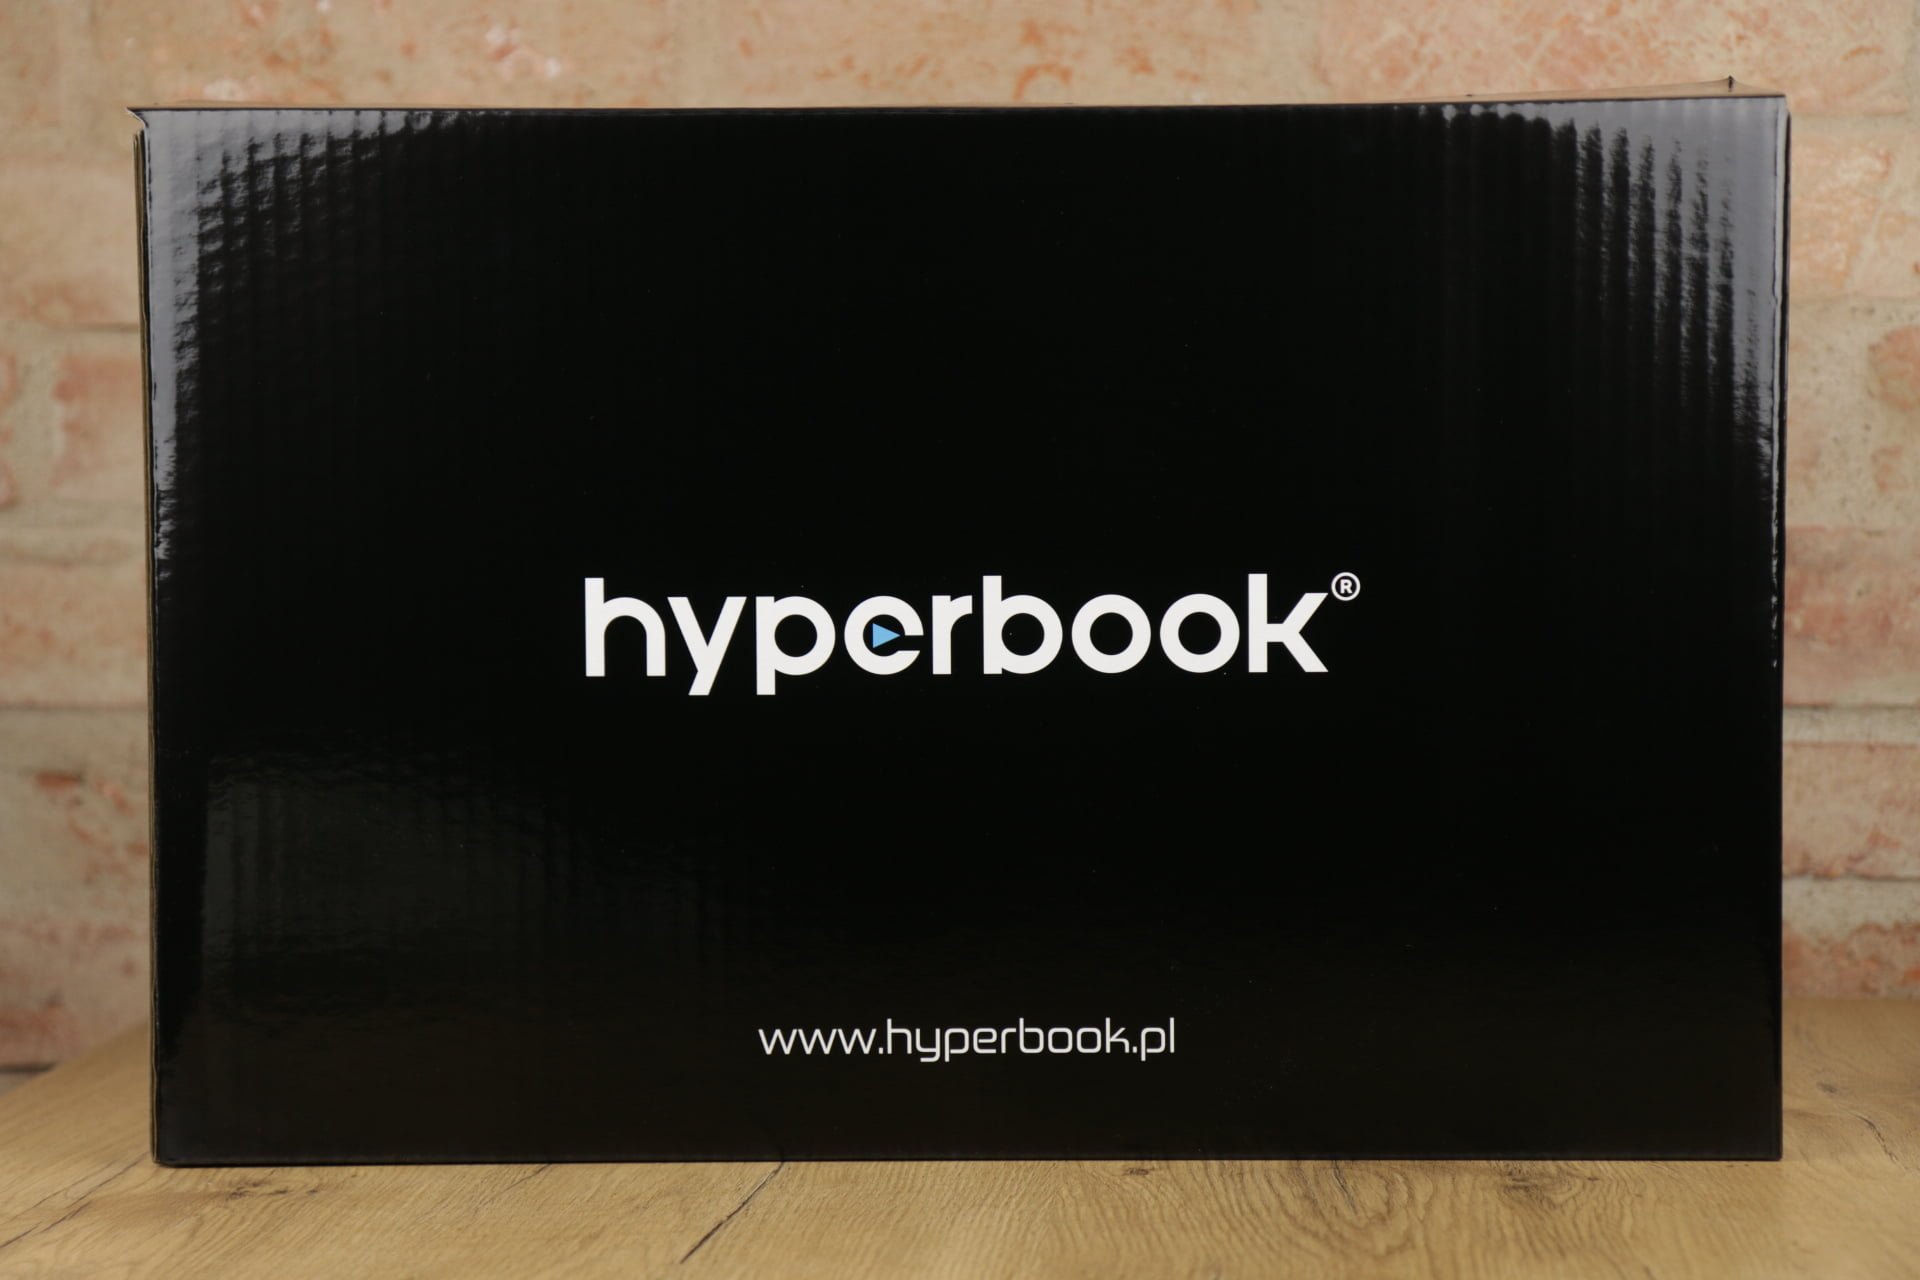 Hyperbook NH7 Zen recenzja test